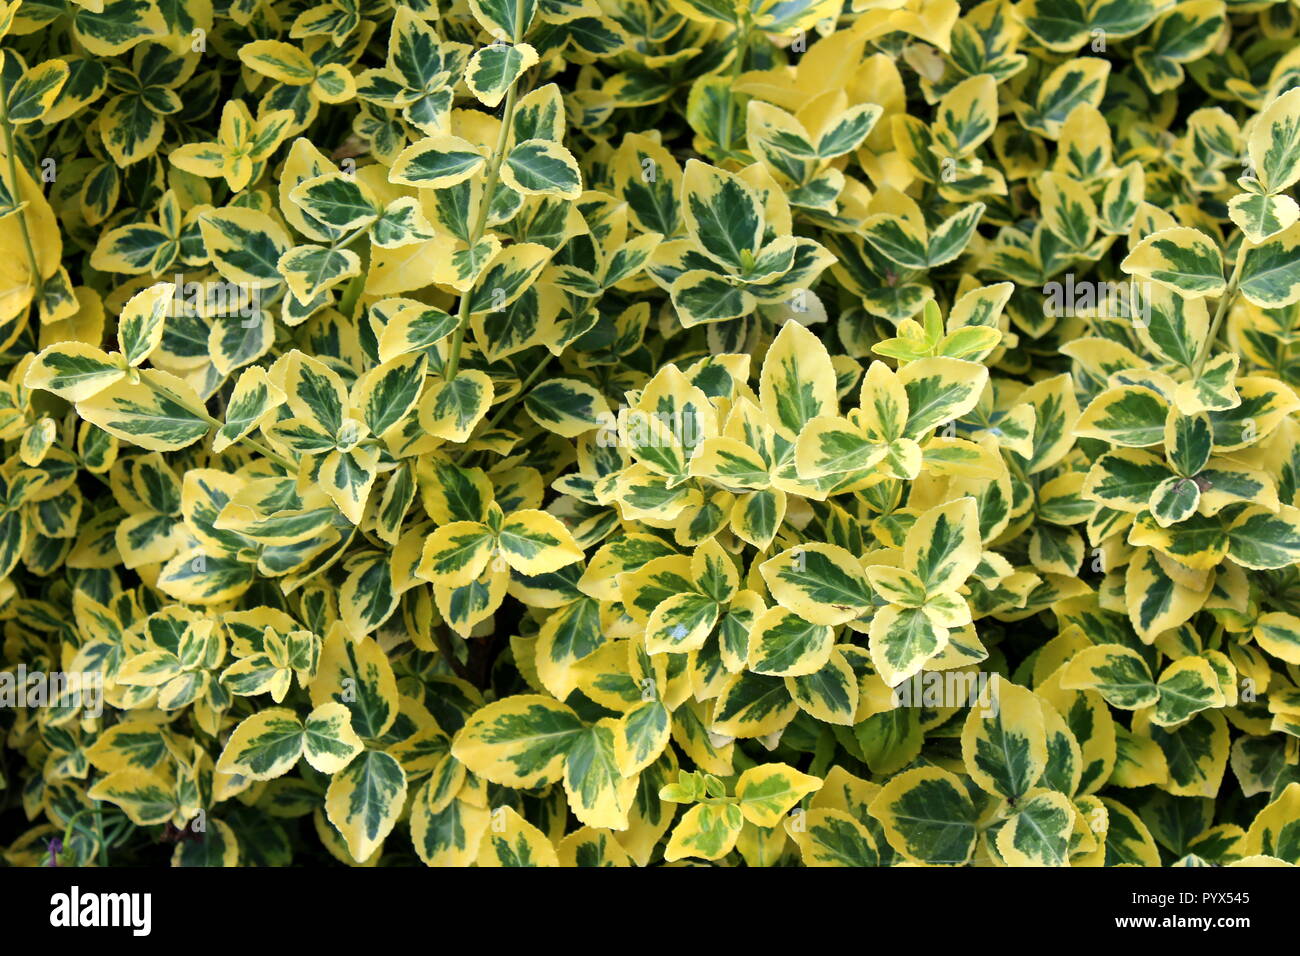 Wintercreeper oder Euonymus Undulata oder die Spindel oder Klettern  euonymus oder Vermögen Spindel oder Winter Kriechgang immergrüner Strauch  Pflanze mit Grün, Gelb Stockfotografie - Alamy